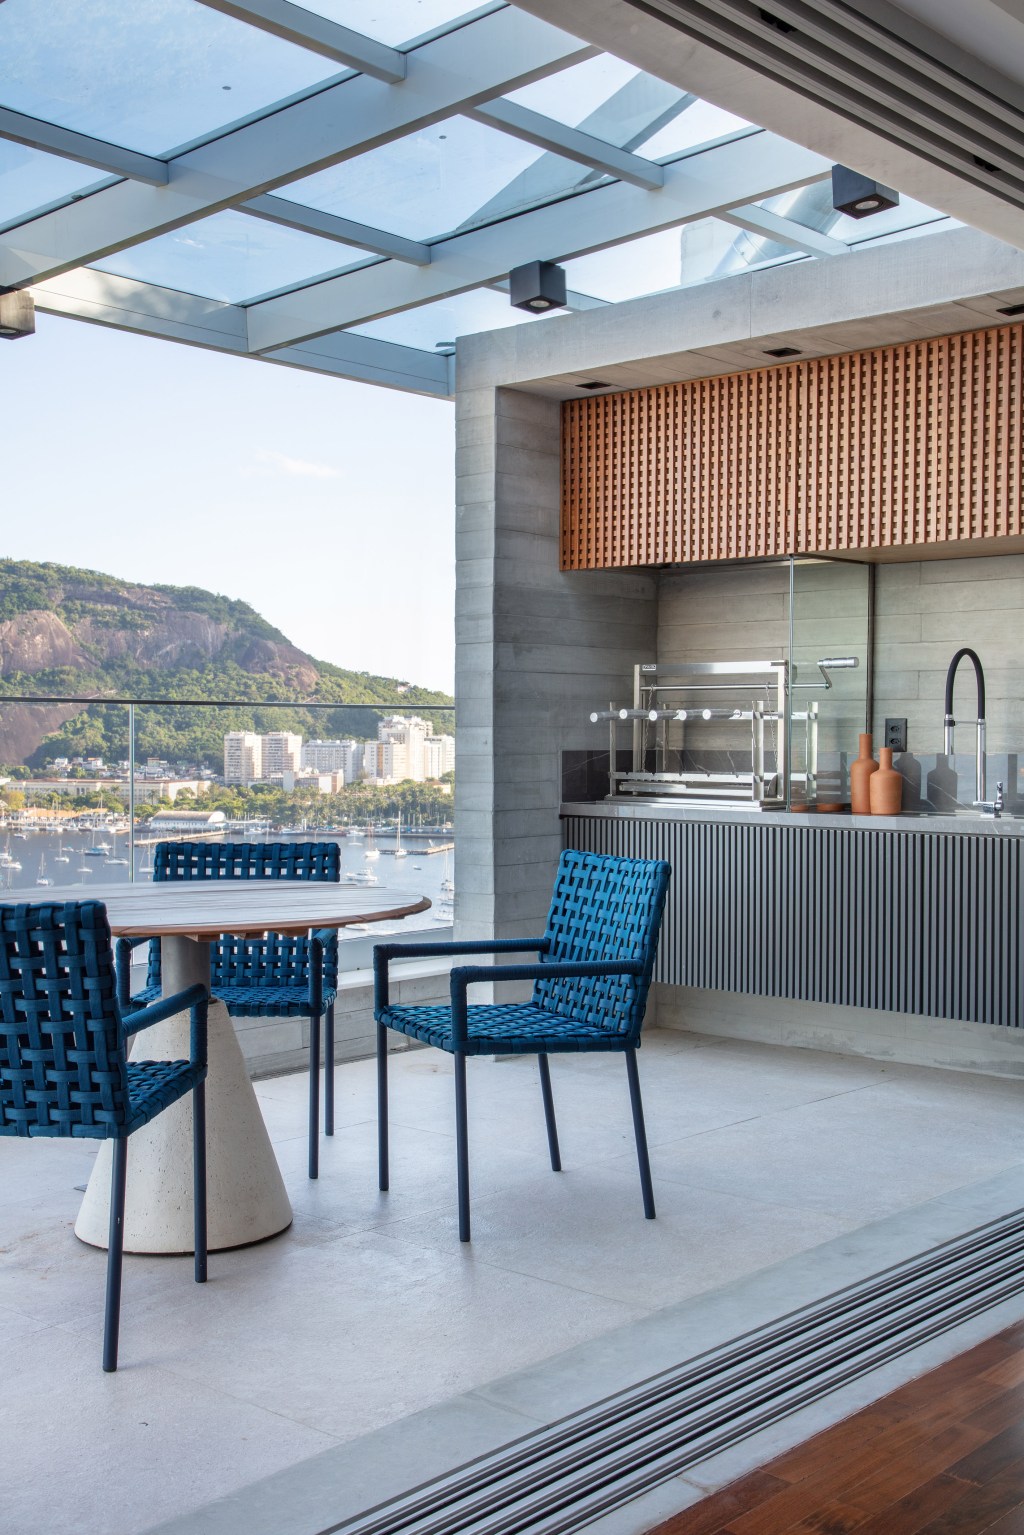 Cobertura 320 m2 vista tirar folêgo Pão de Açúcar Studio Plano Arquitetura decoração varanda churrasqueira gourmet mesa cadeira